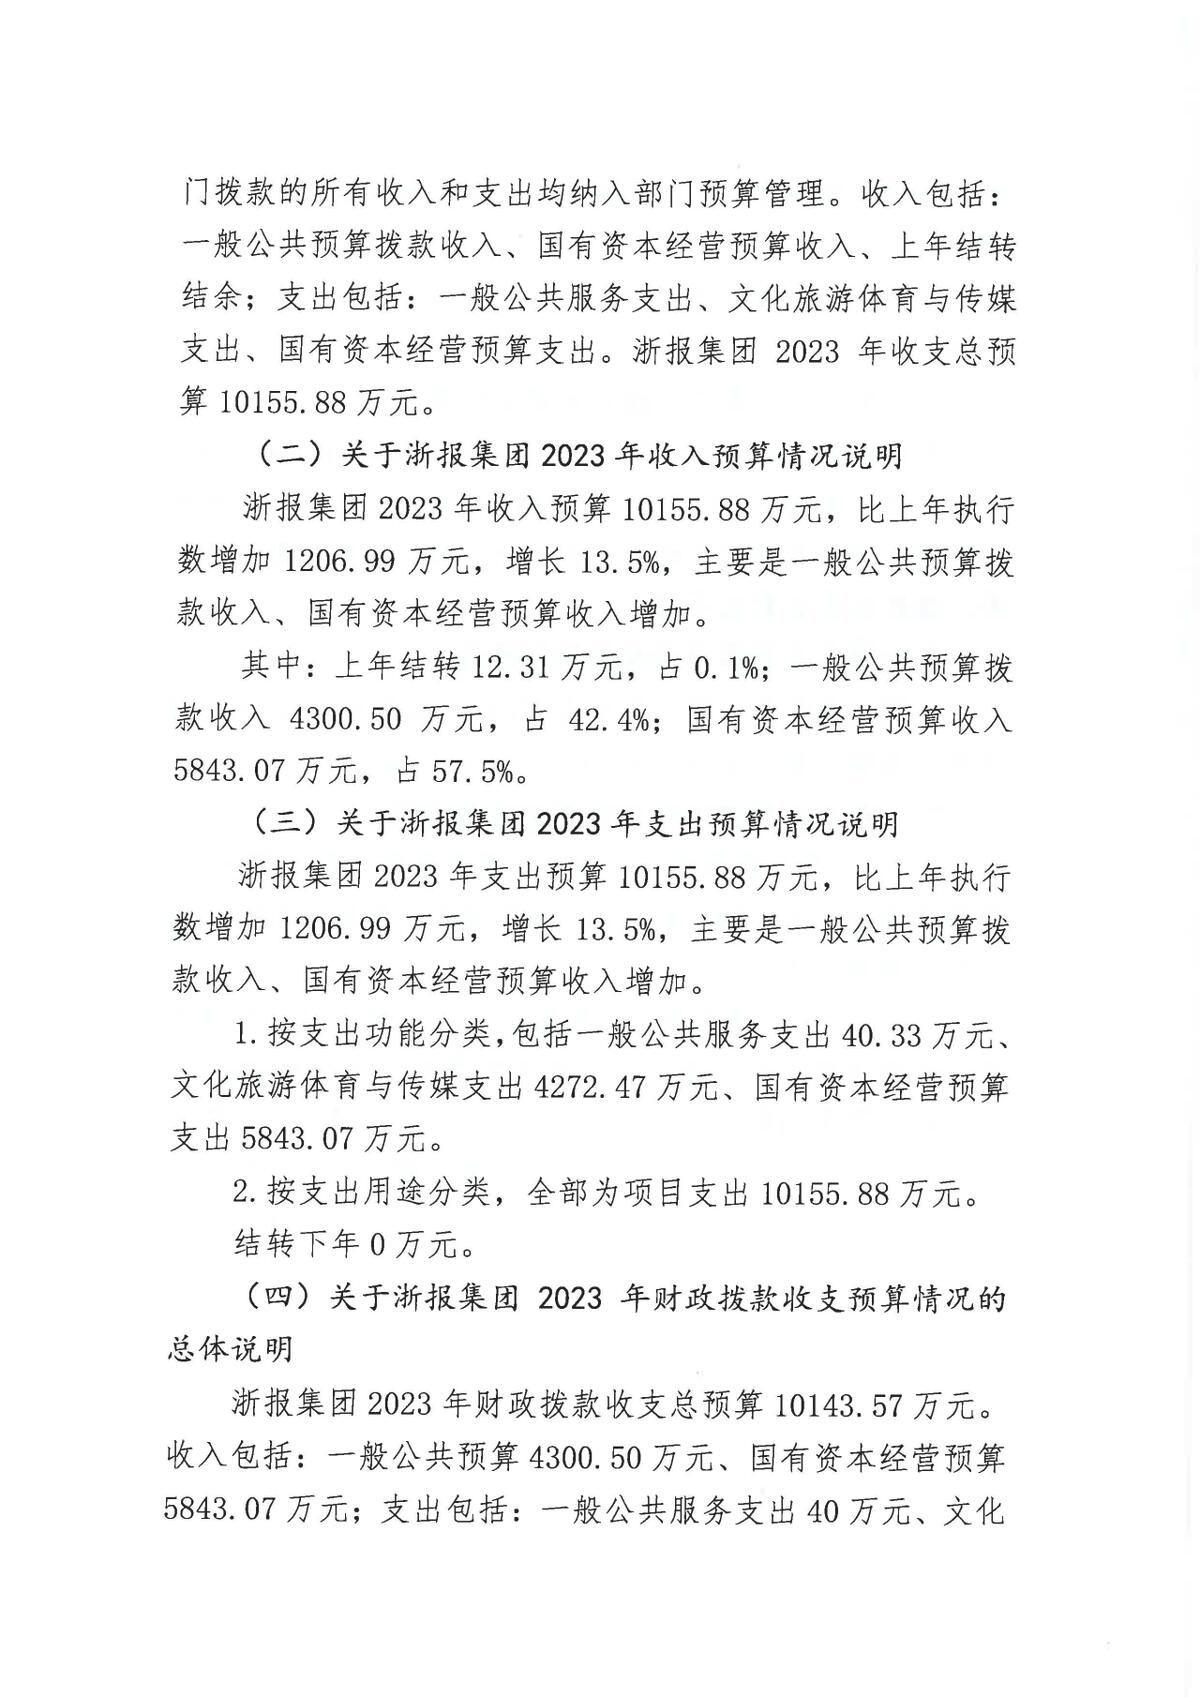 浙江日报报业集团2023年部门预算公开_页面_05.jpg